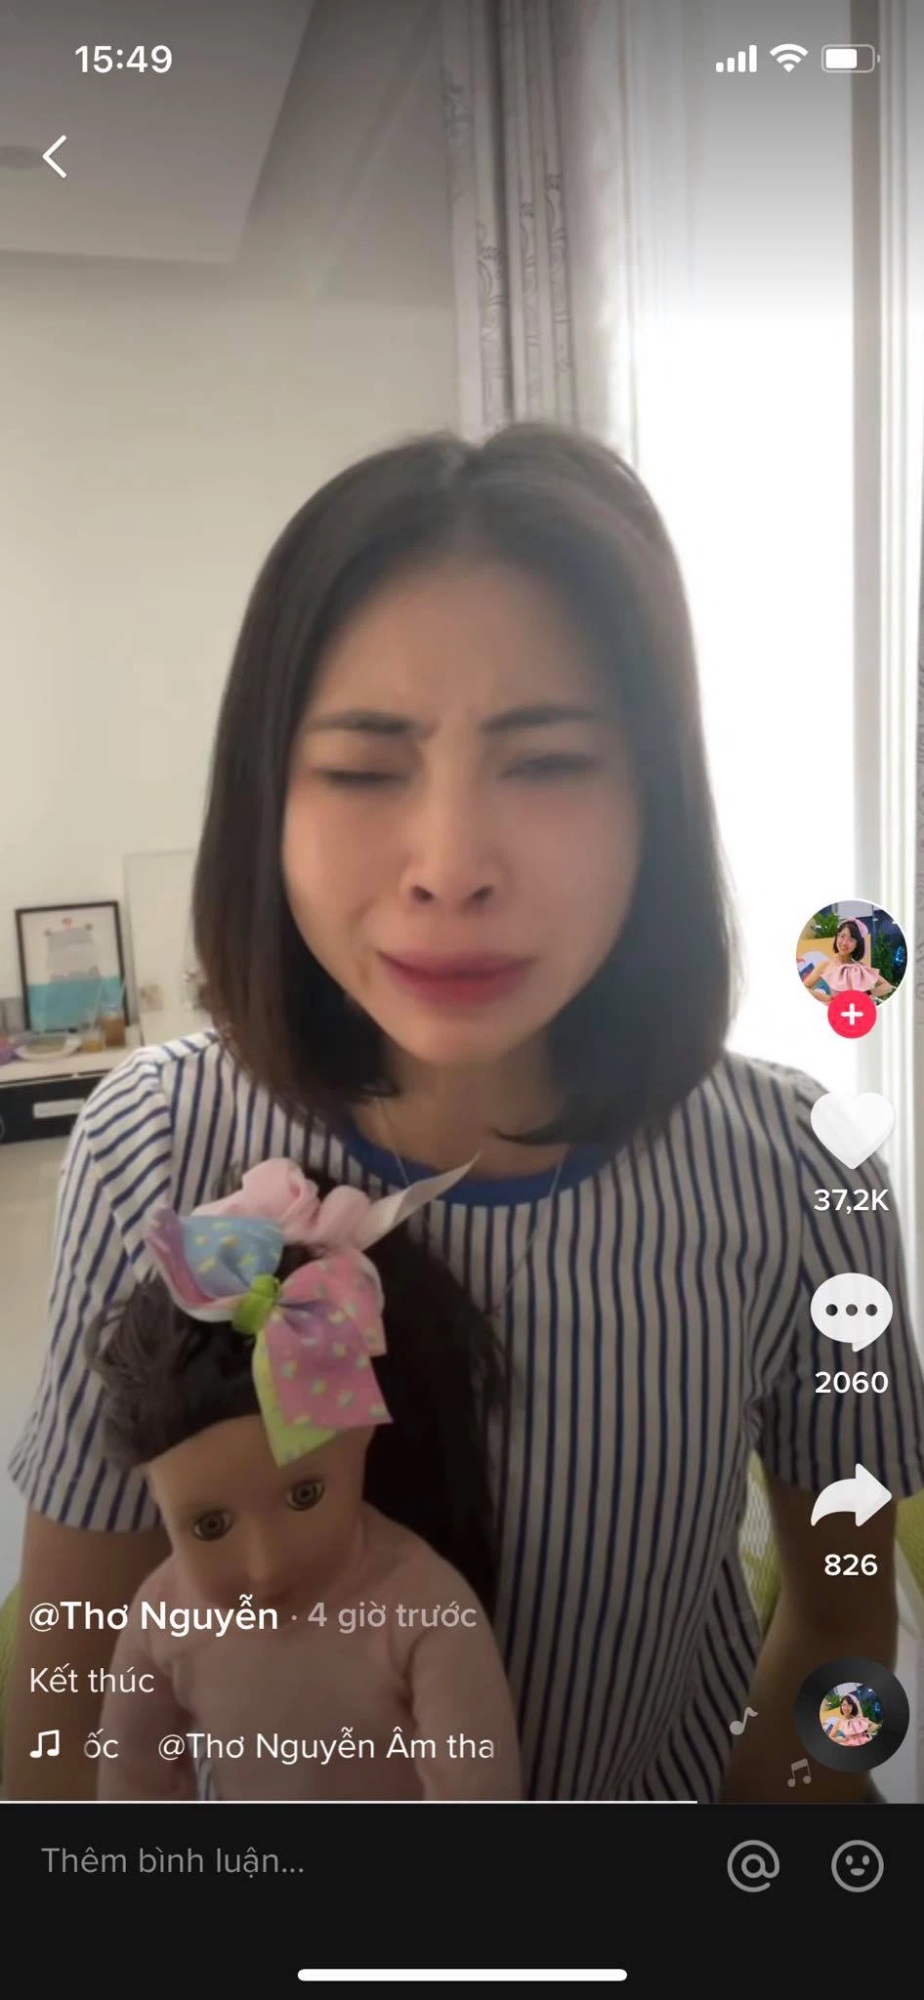 Youtuber Thơ Nguyễn khóc nức nở muốn giải nghệ, chia sẻ sau bao năm làm vlog đã có đủ tài chính lẫn bằng cấp để làm công việc khác - Ảnh 1